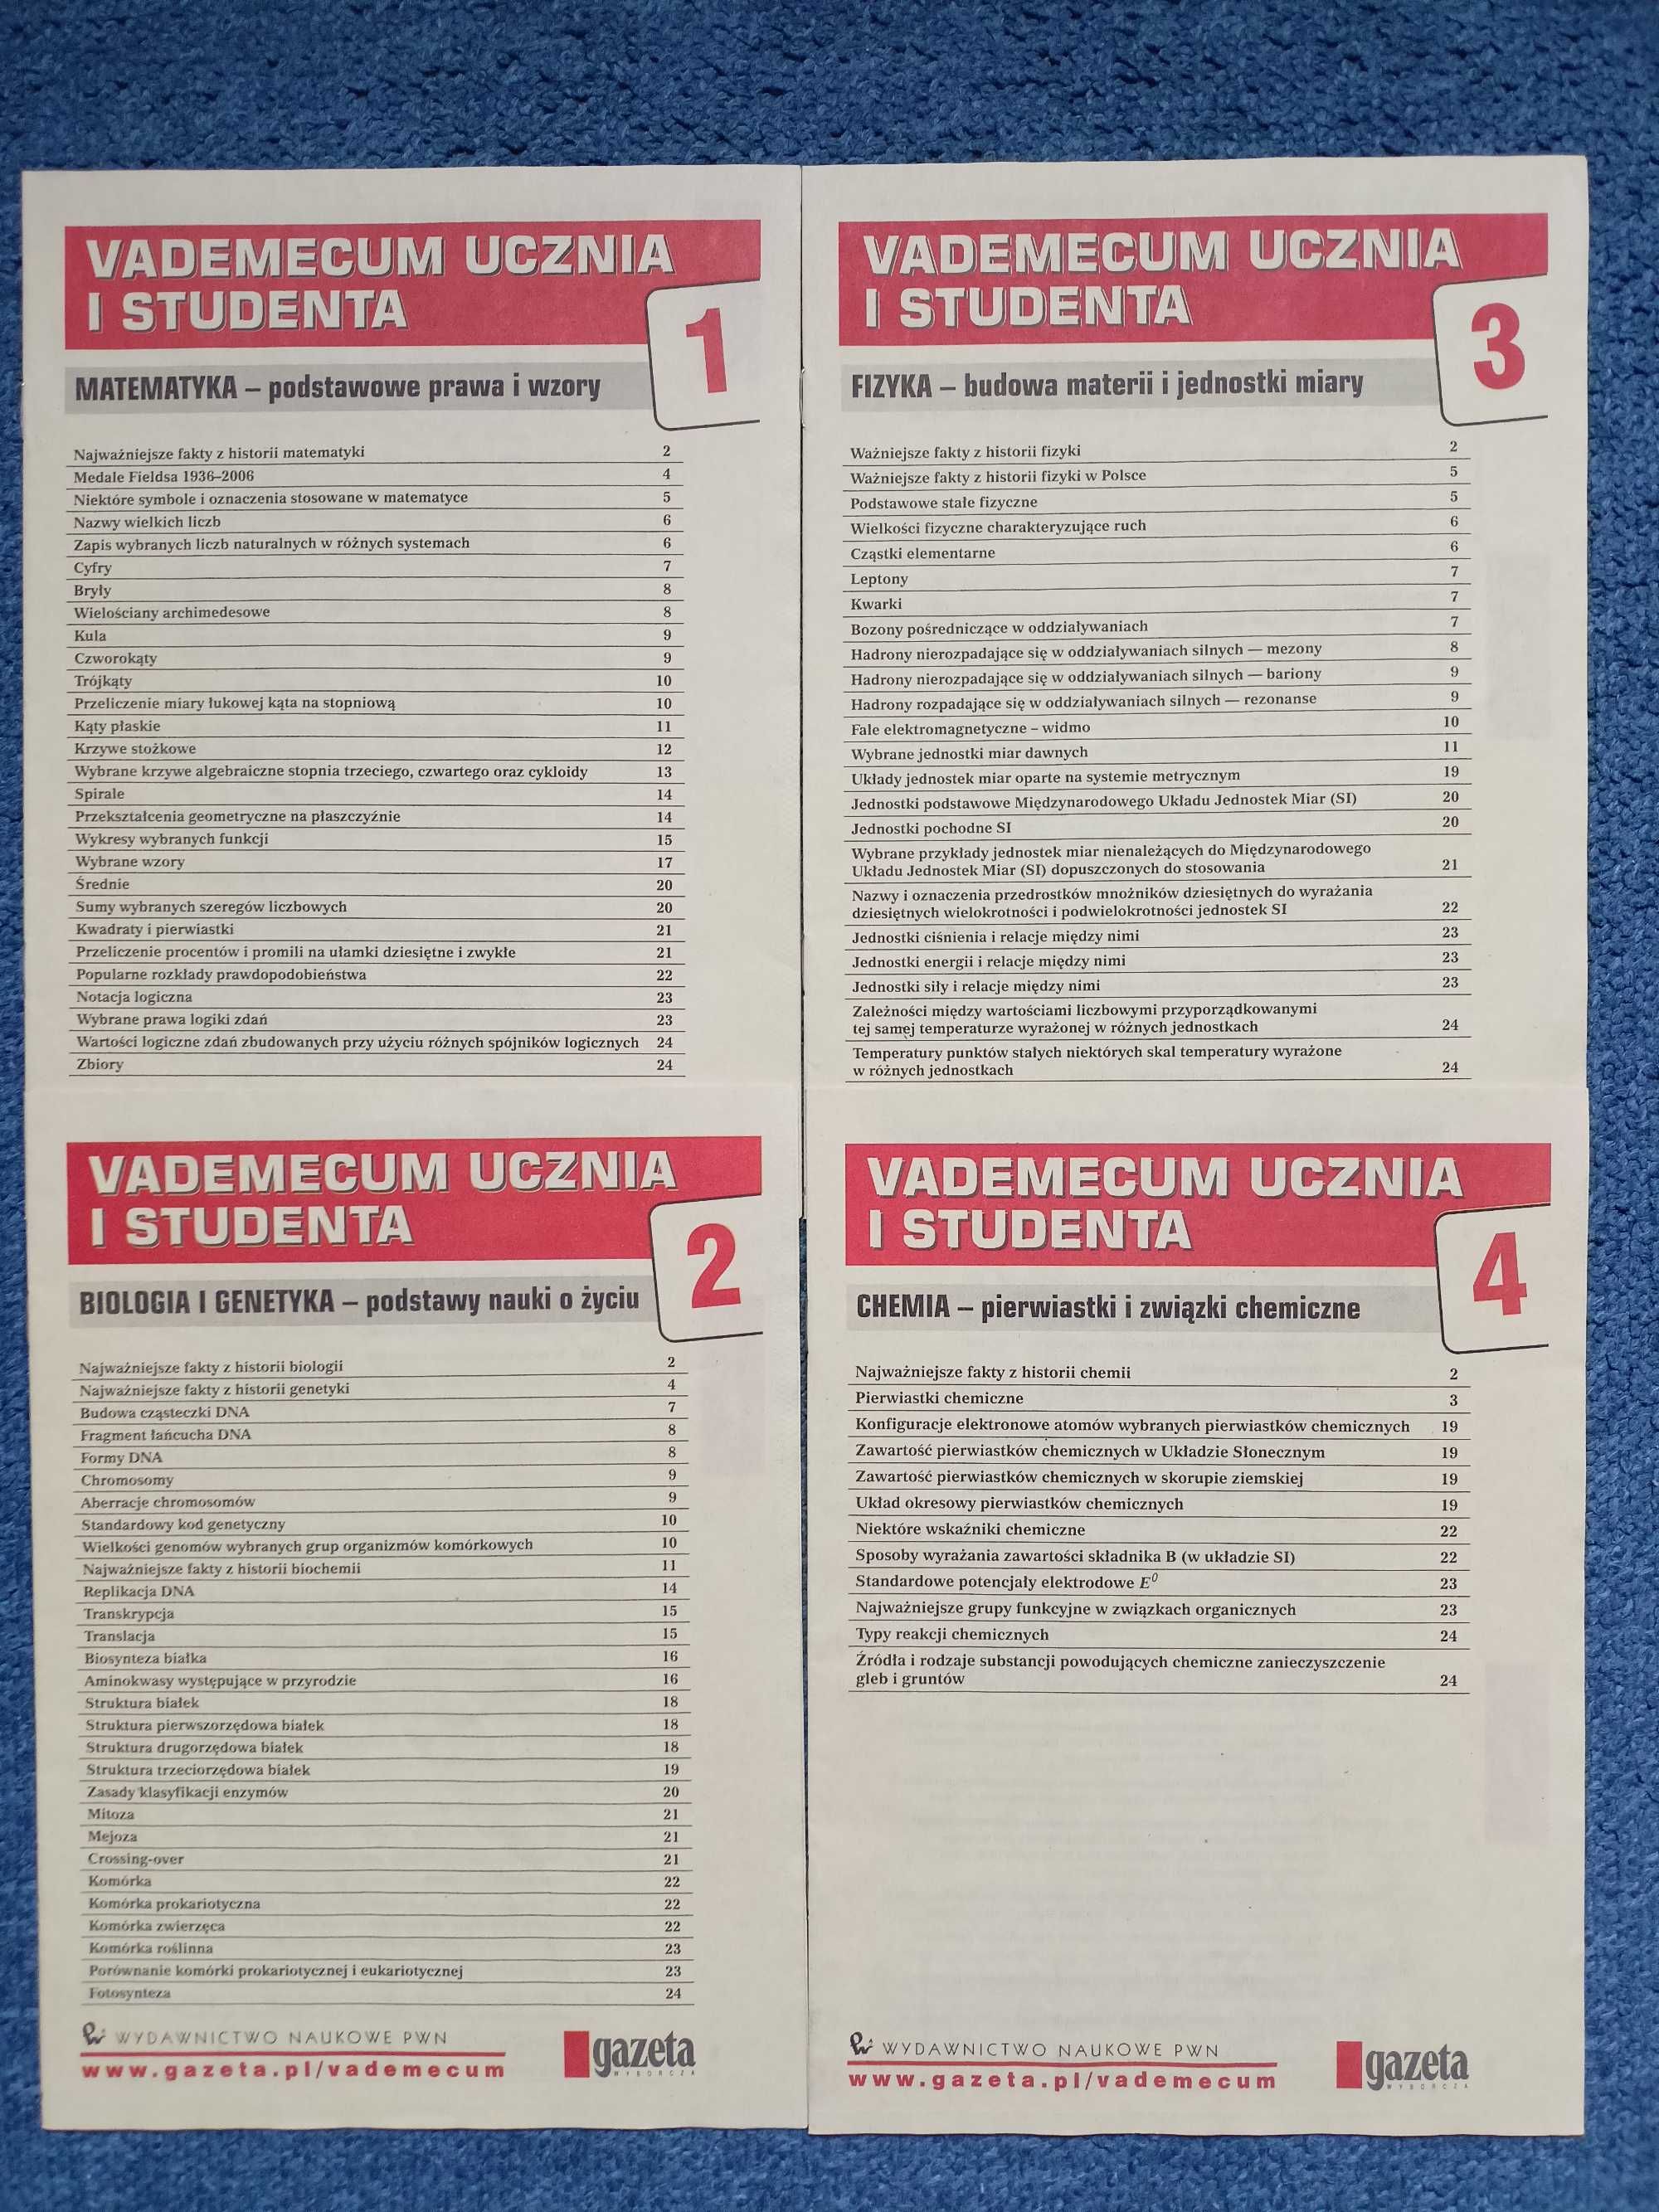 Gazeta Wyborcza kolekcja Vademecum ucznia i studenta 12 zeszytów